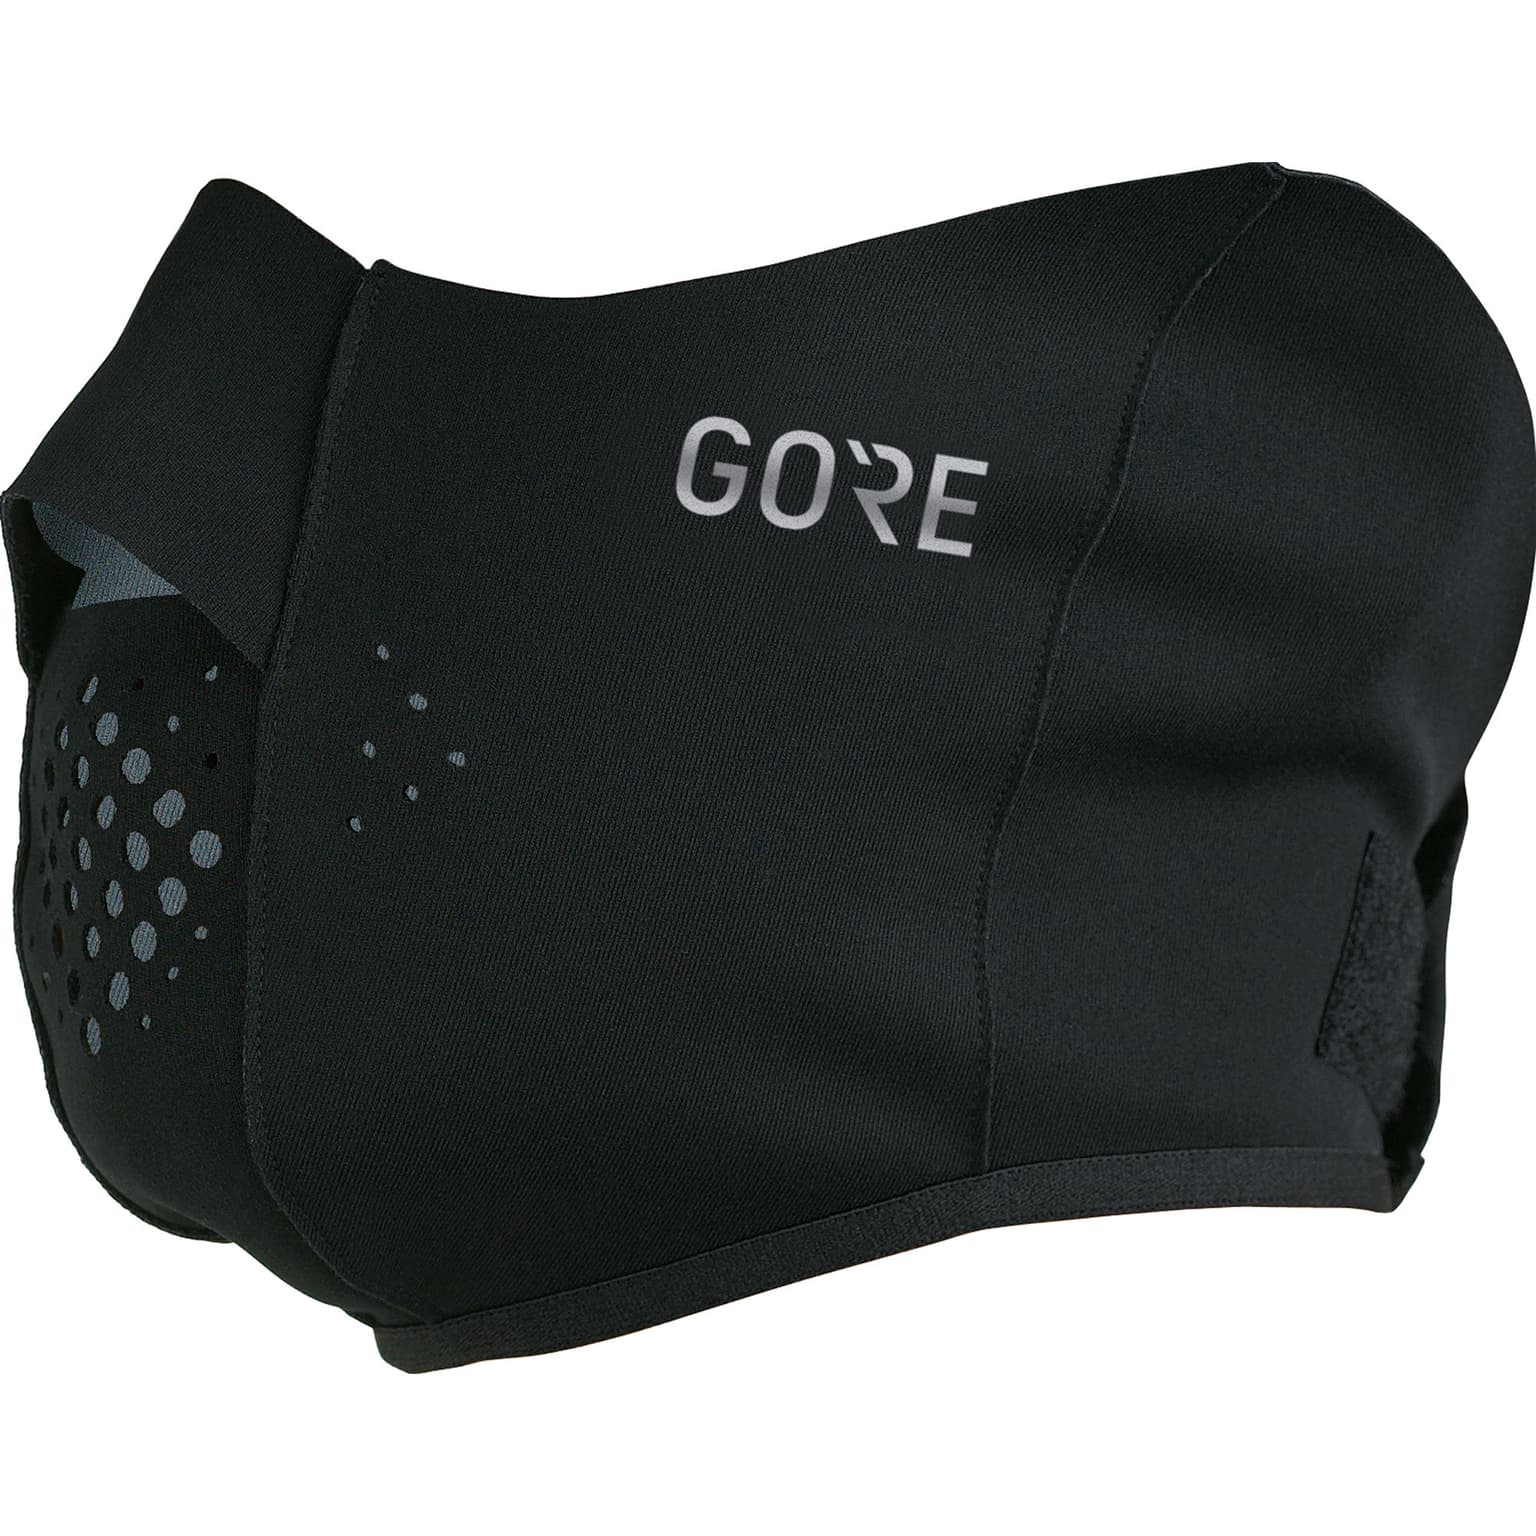 Gore Gore GWS Gesichtswärmer Gesichtsmaske schwarz 1